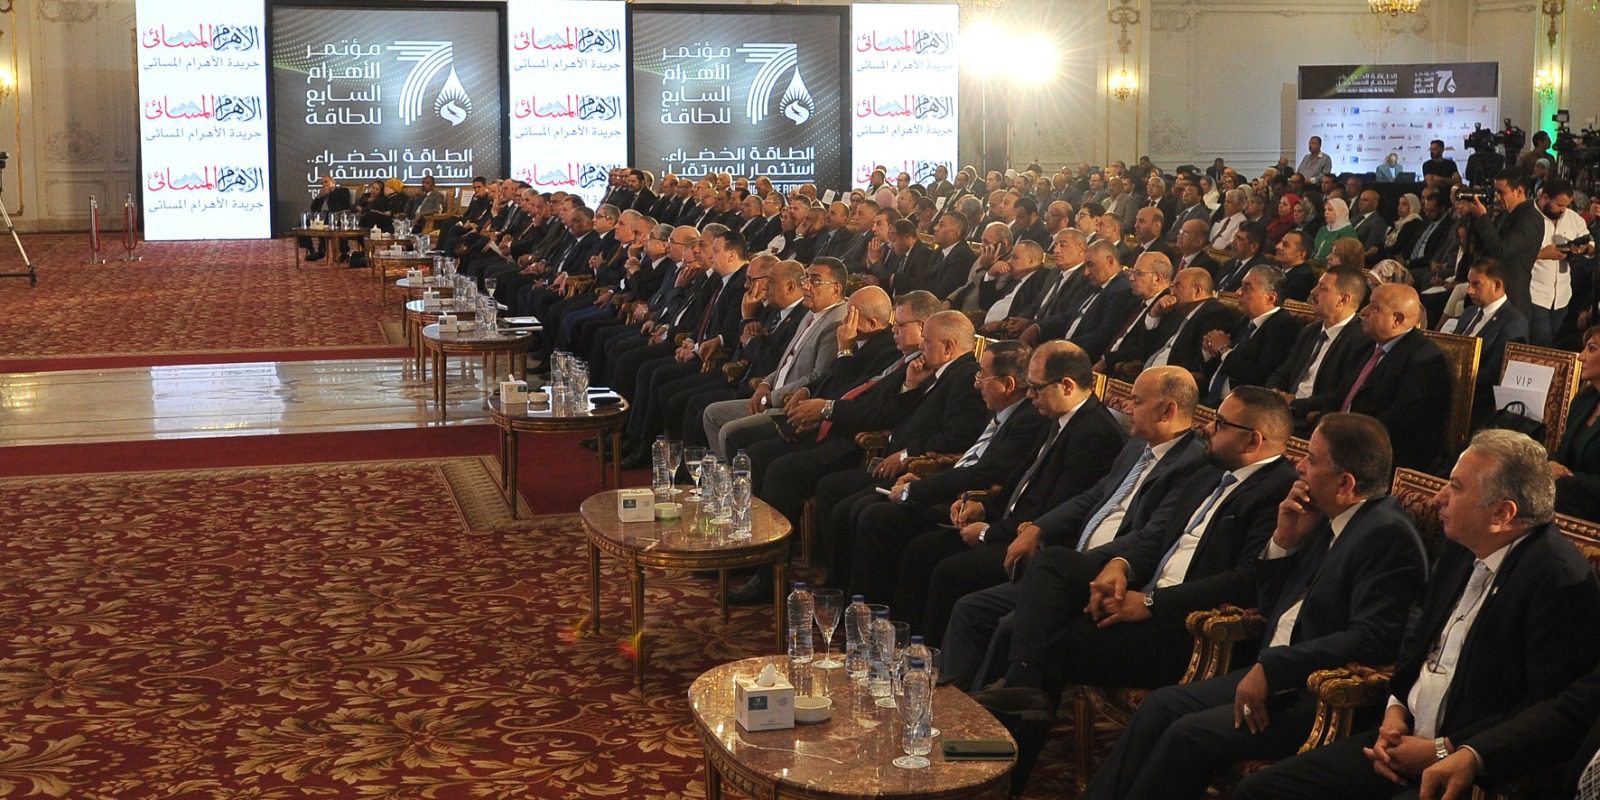 الدولة المصرية، أيقنت أهمية الطاقة المتجددة ودورها في تحقيق التنمية المستدامة